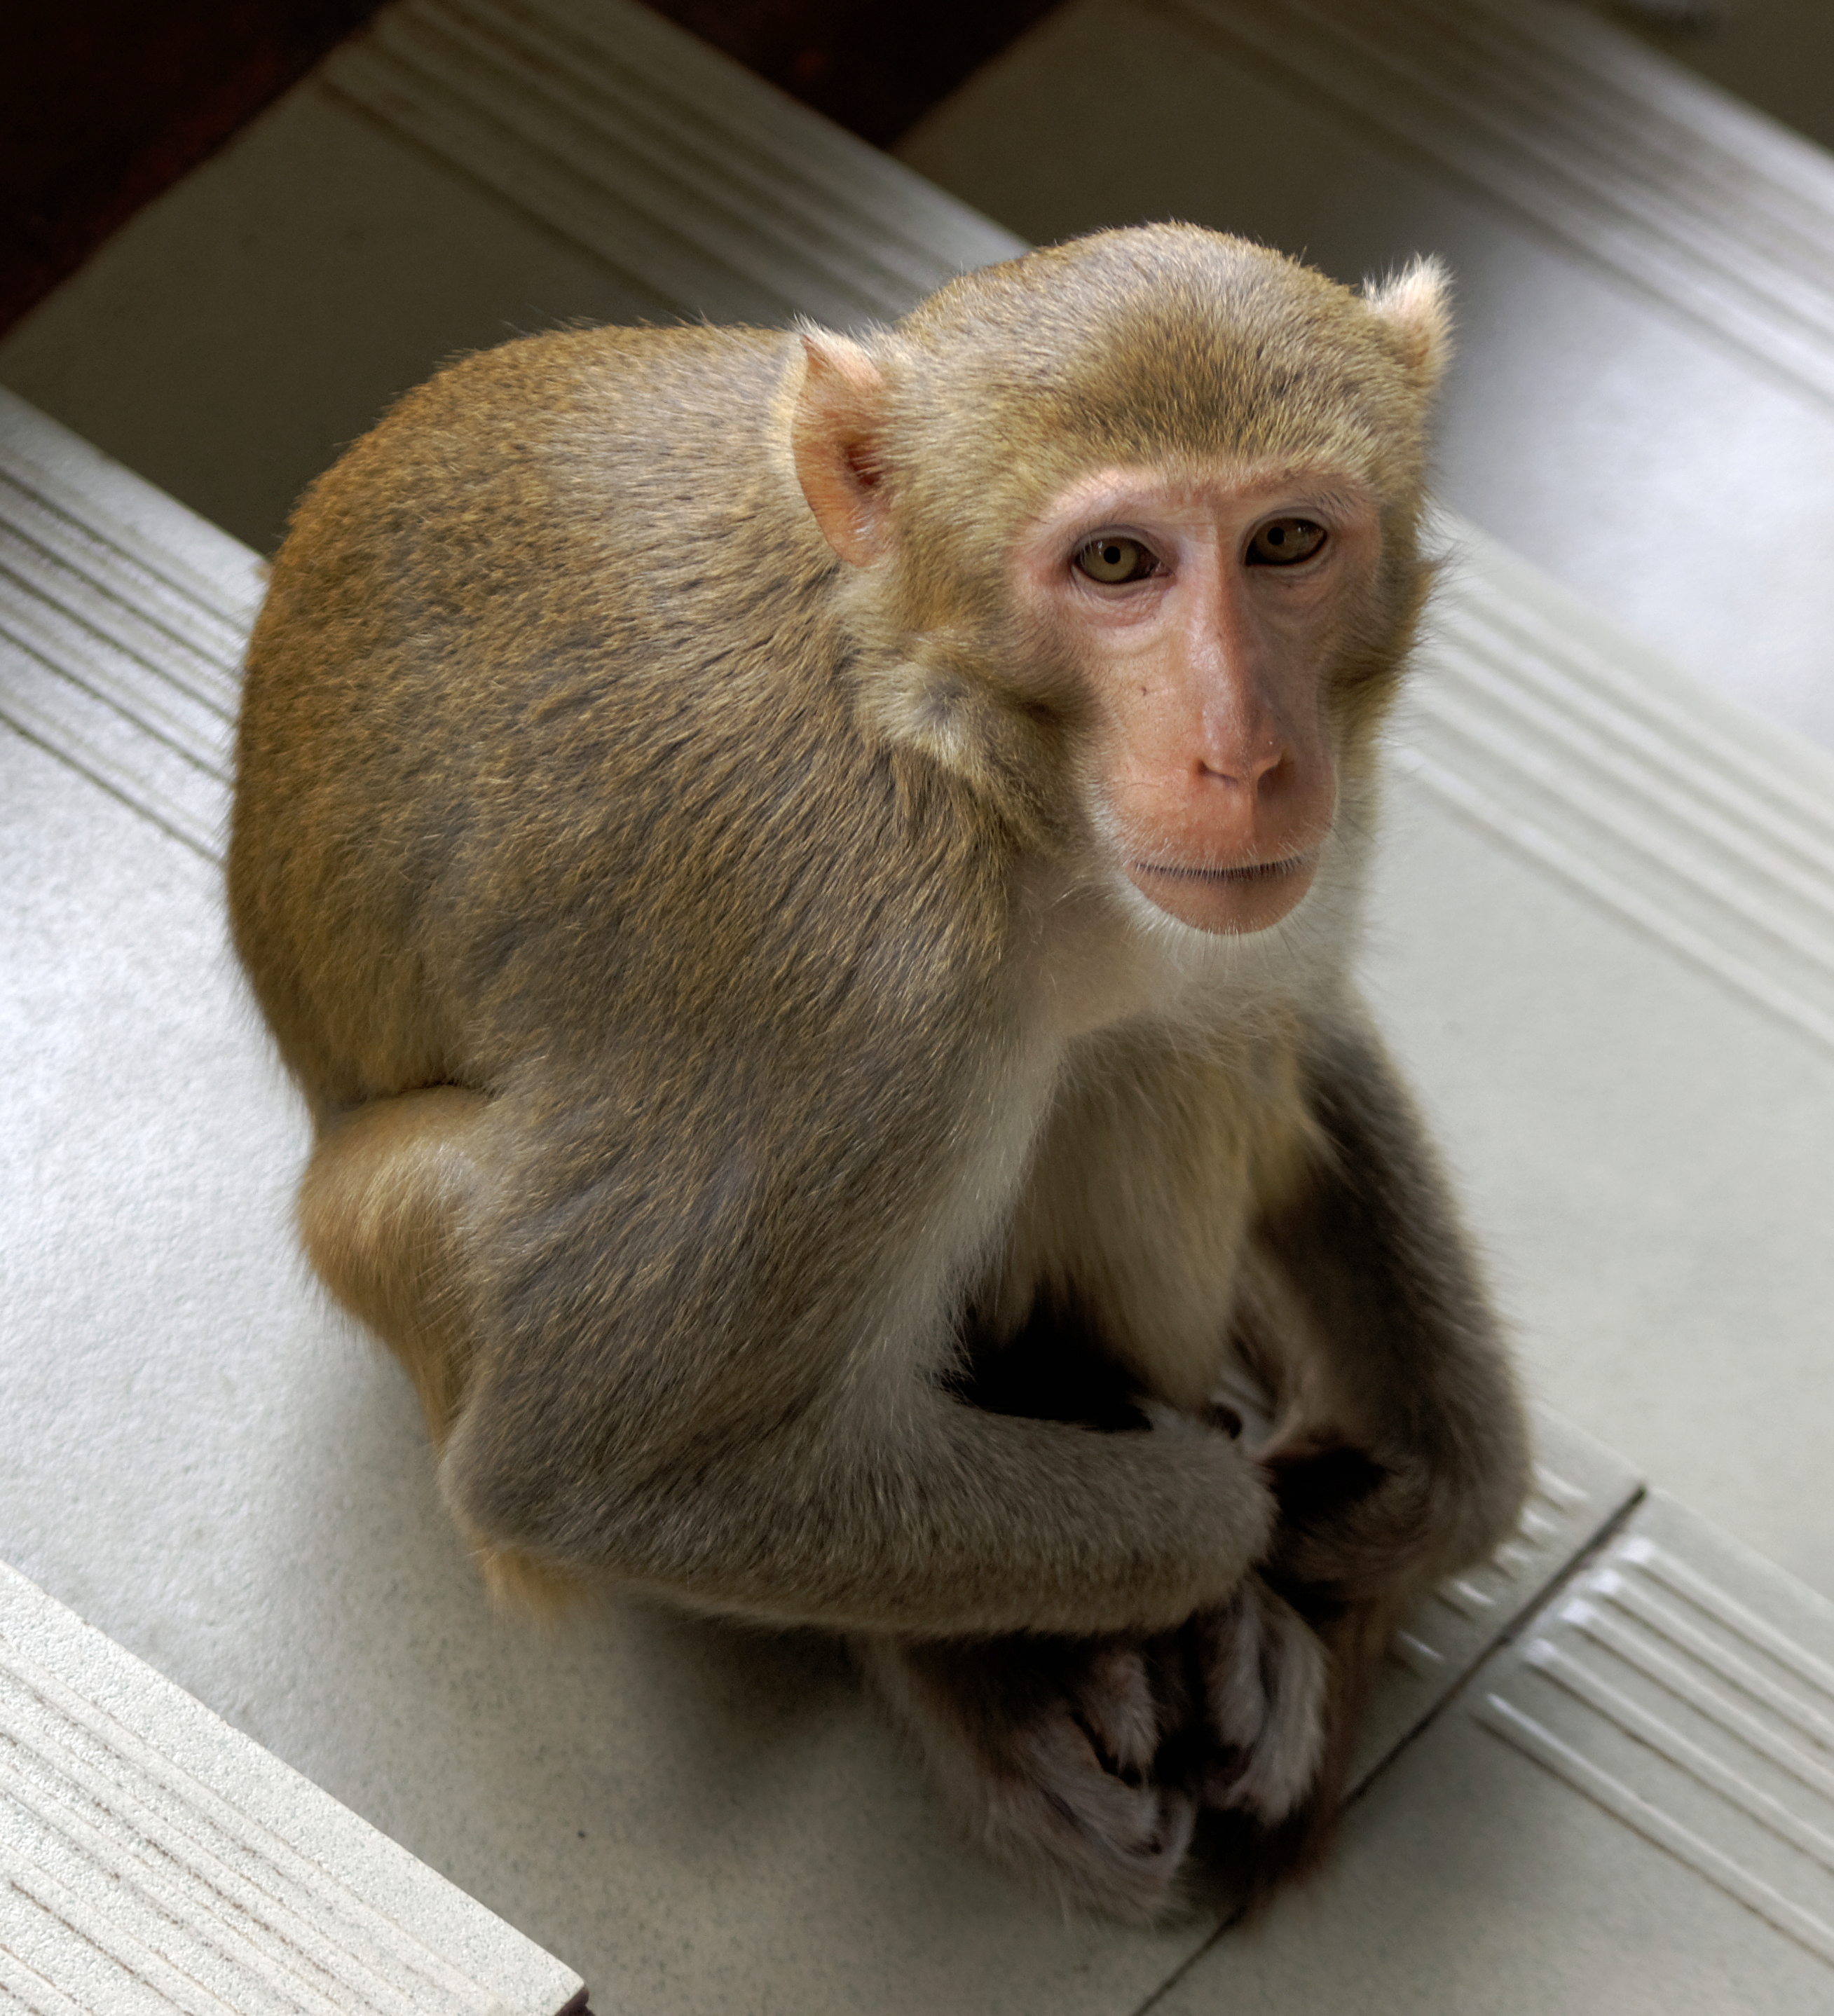 20160802 - Rhesus macaque - Mount Popa, Myanmar - 7037